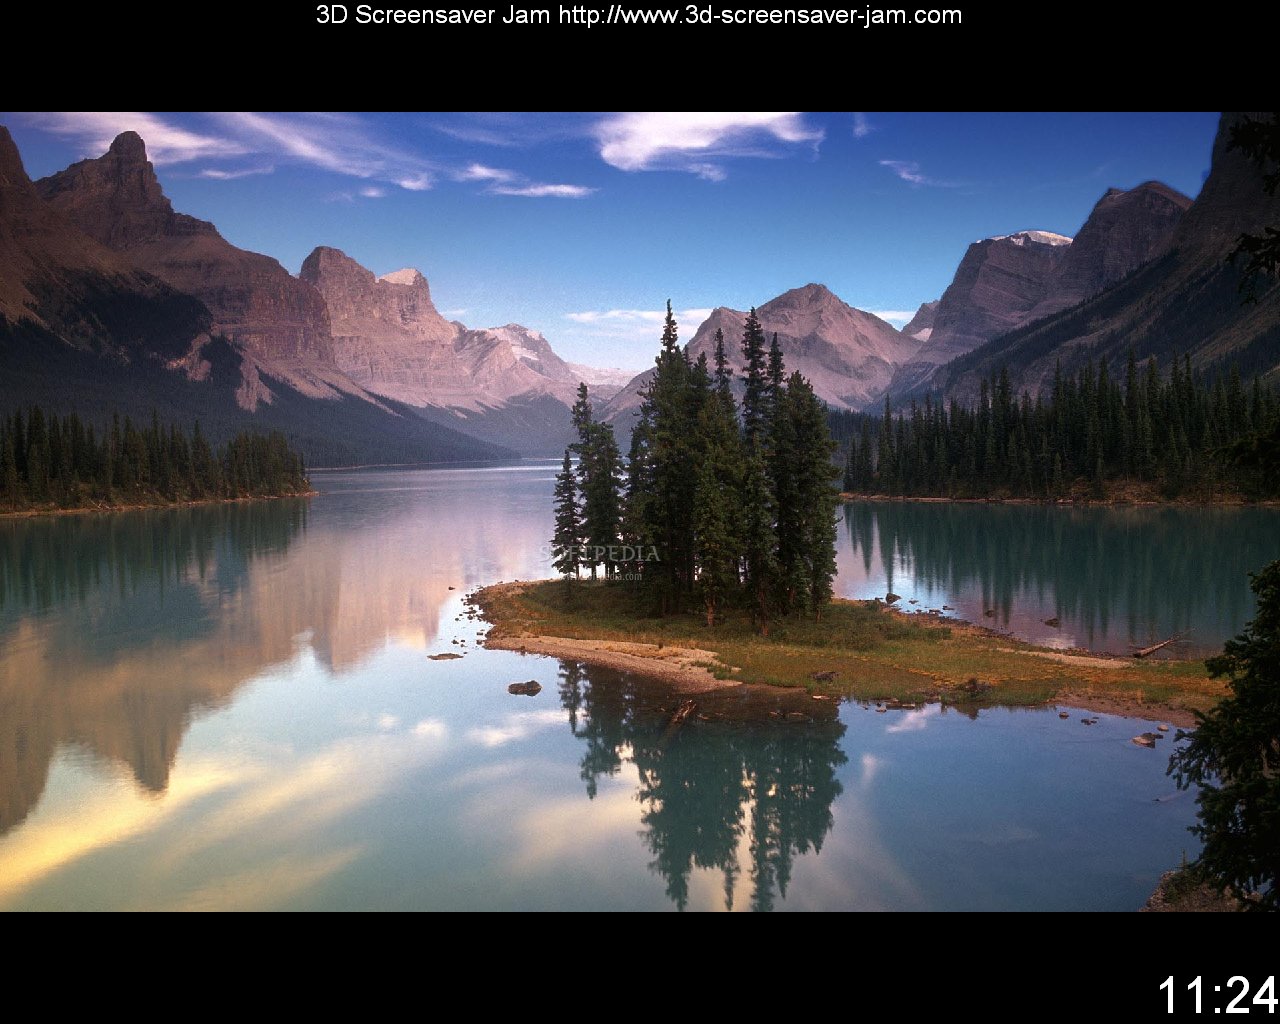 50+] Free Screensavers and Wallpaper for Windows 7 - WallpaperSafari